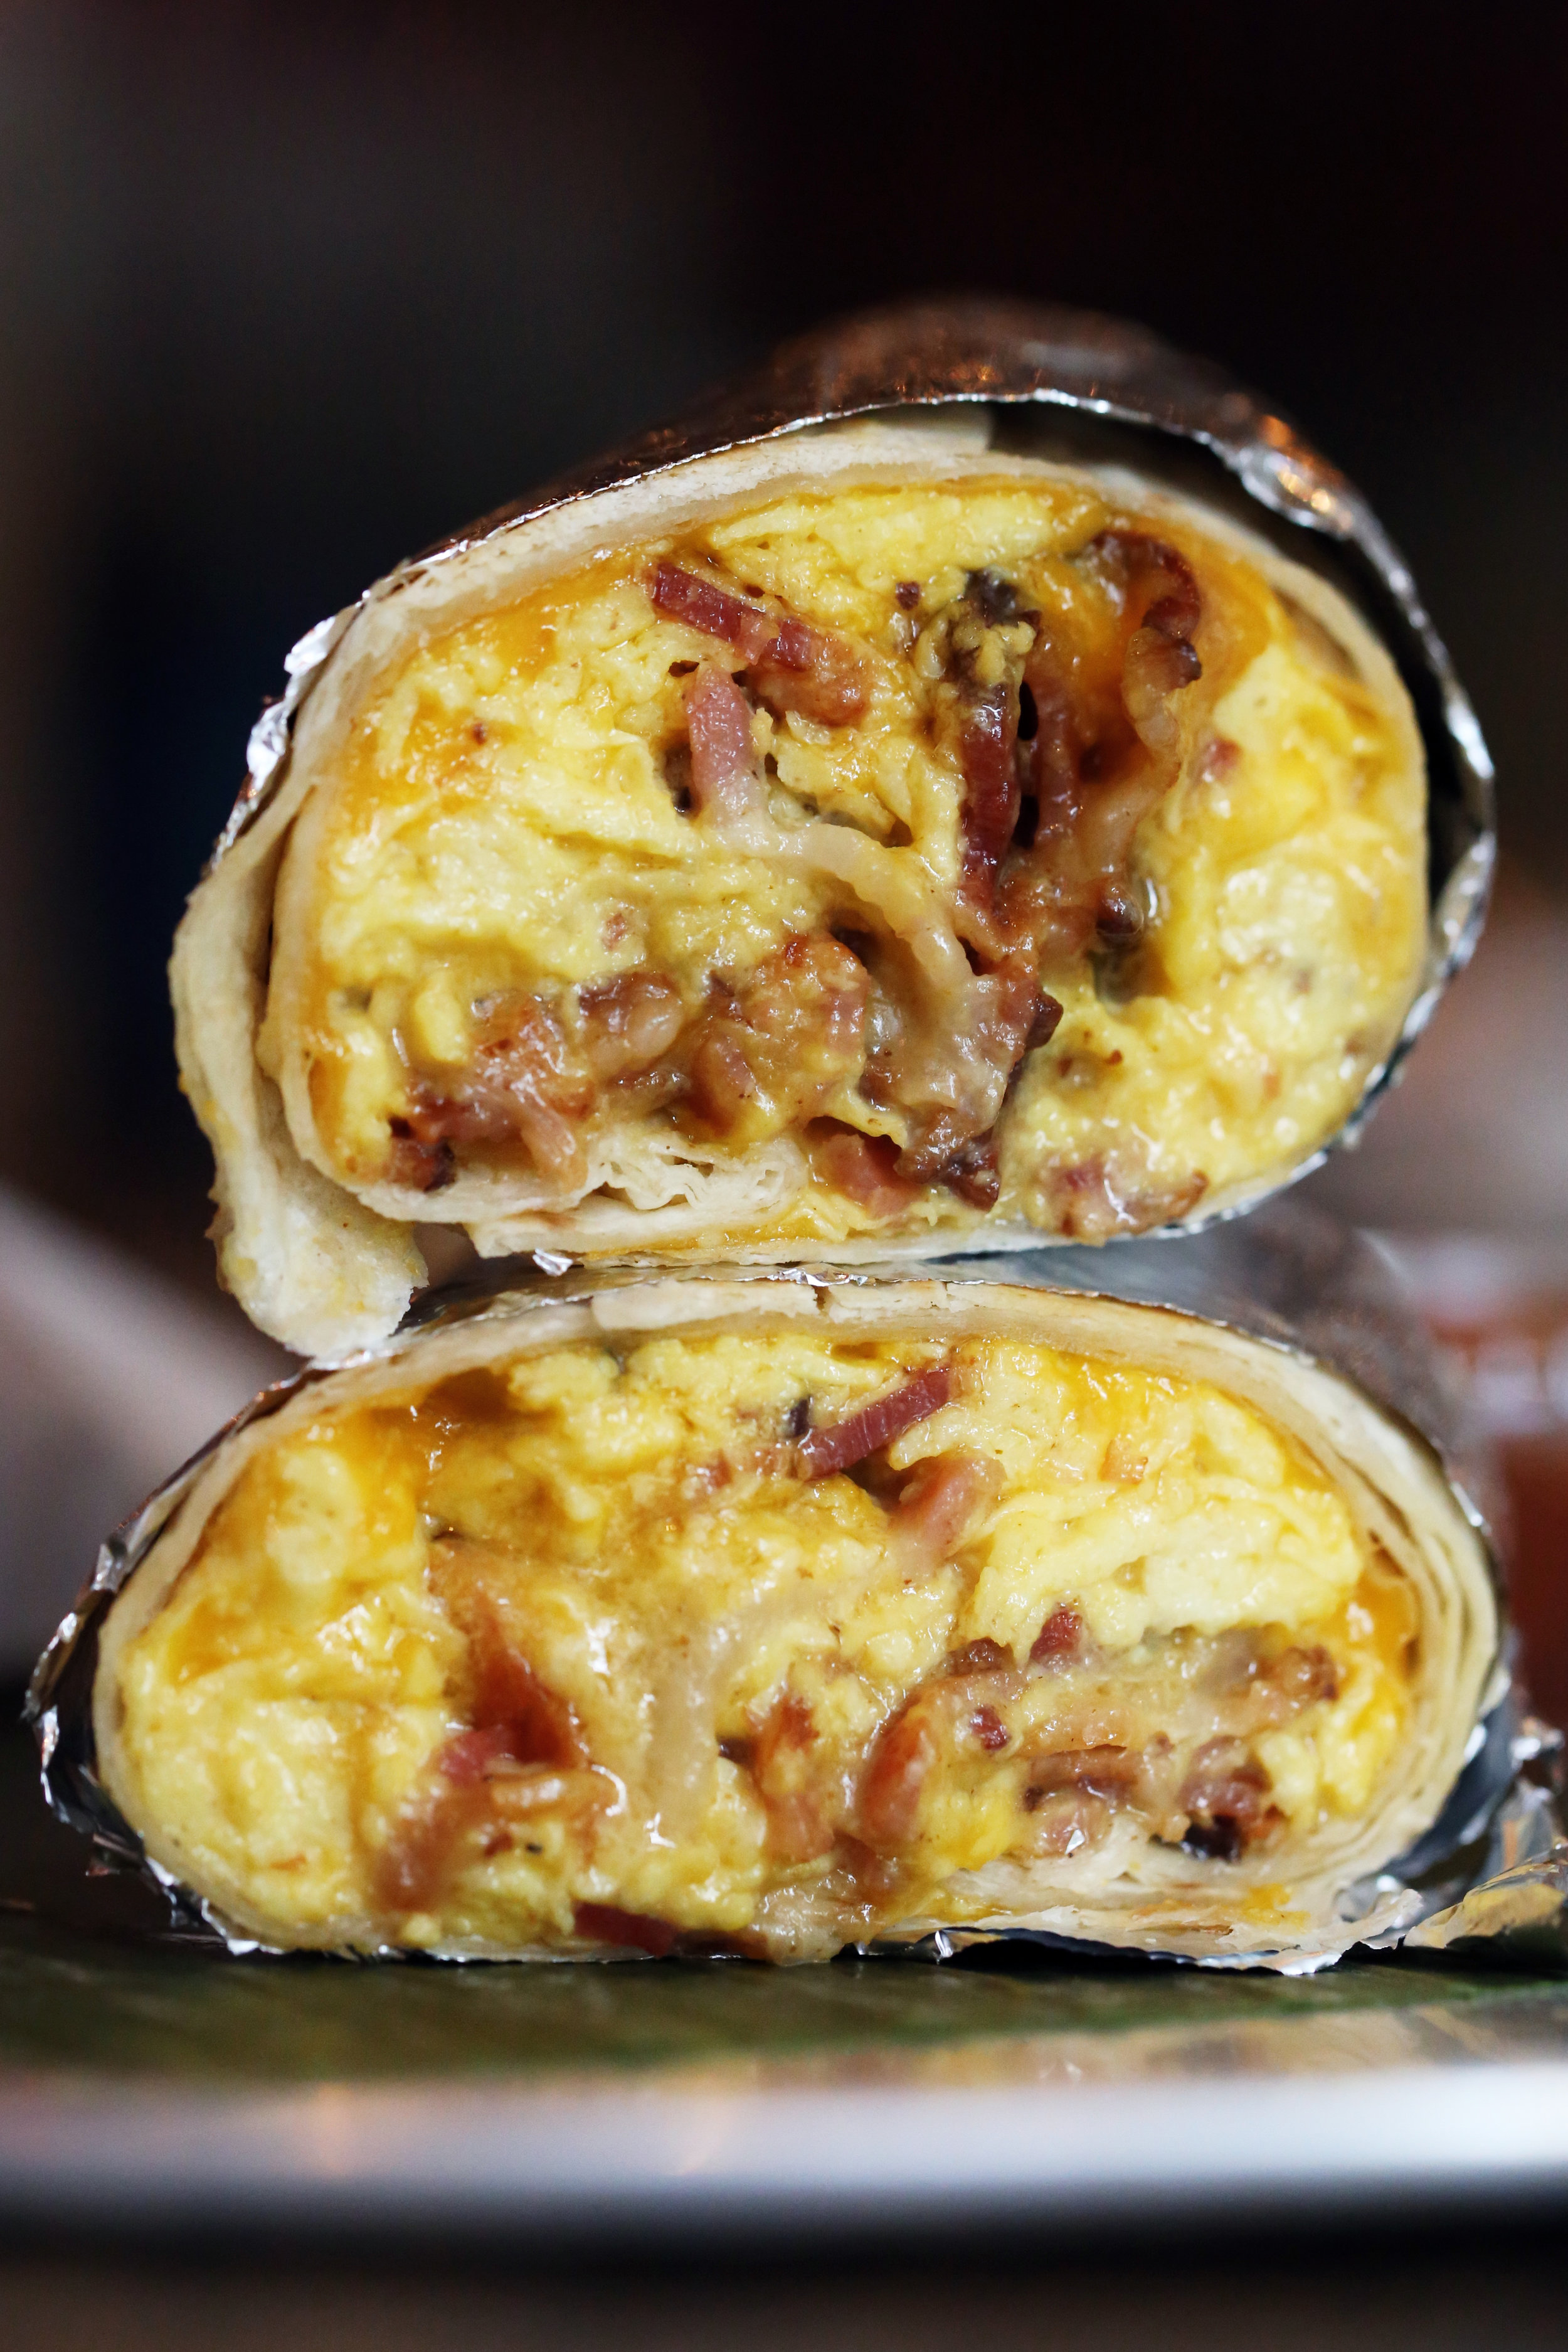 marissa-evans-el-vez-ny-bacon-egg-and-cheese-breakfast-burrito-1800.jpg